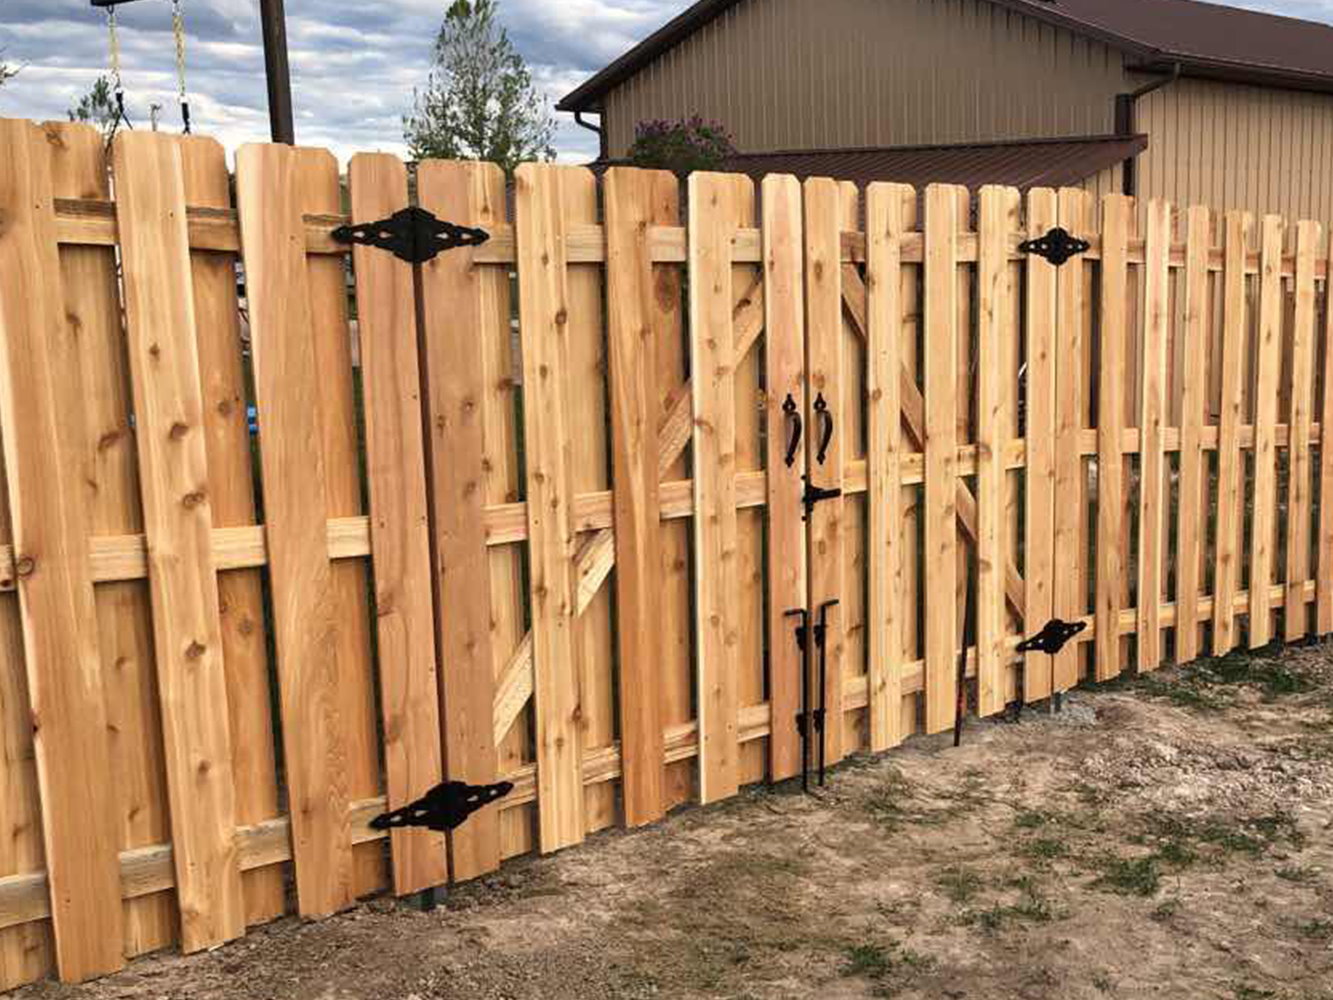 Sunshine WY Shadowbox style wood fence